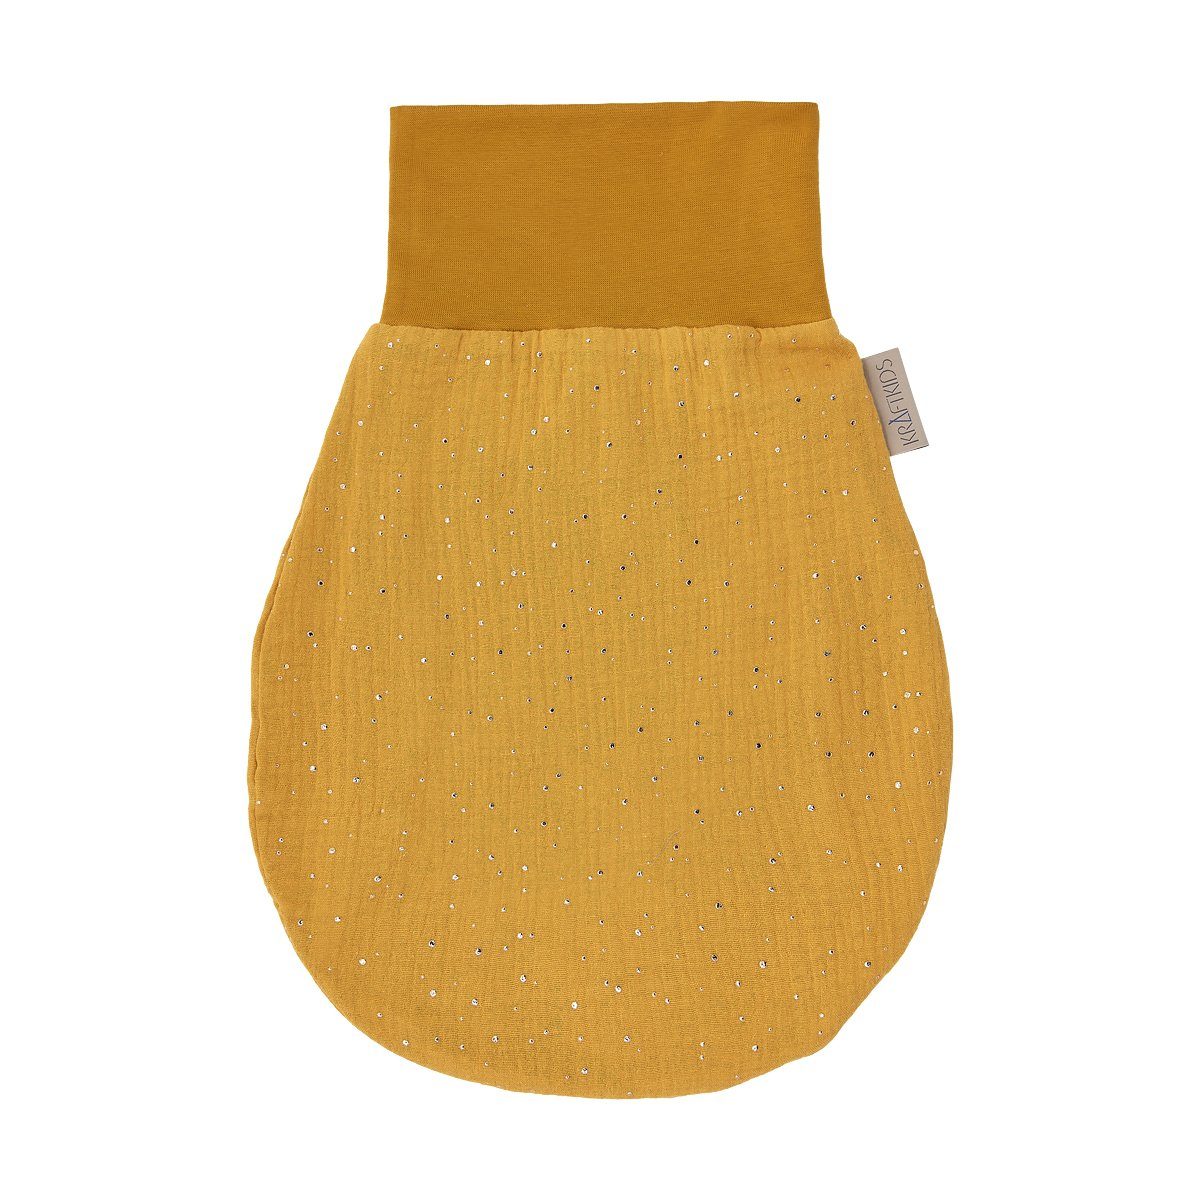 KraftKids Babyschlafsack Musselin goldene Punkte auf Gelb, Sommer/Frühling-Variante, 100% Baumwolle, hochwärtiger Stoff, zwei Schichten Stoff